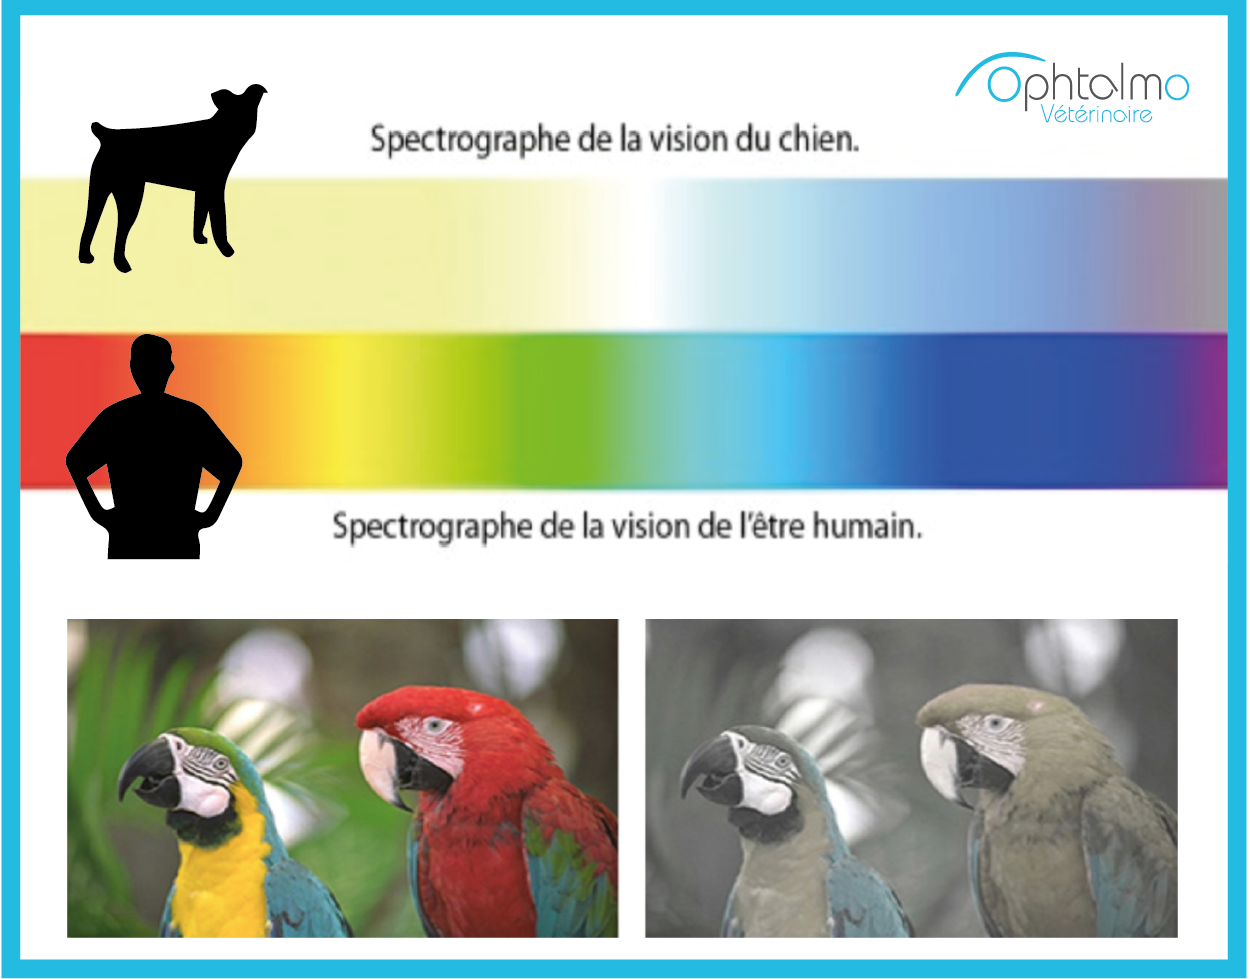 vision chien, homme, couleur, spectrographe 